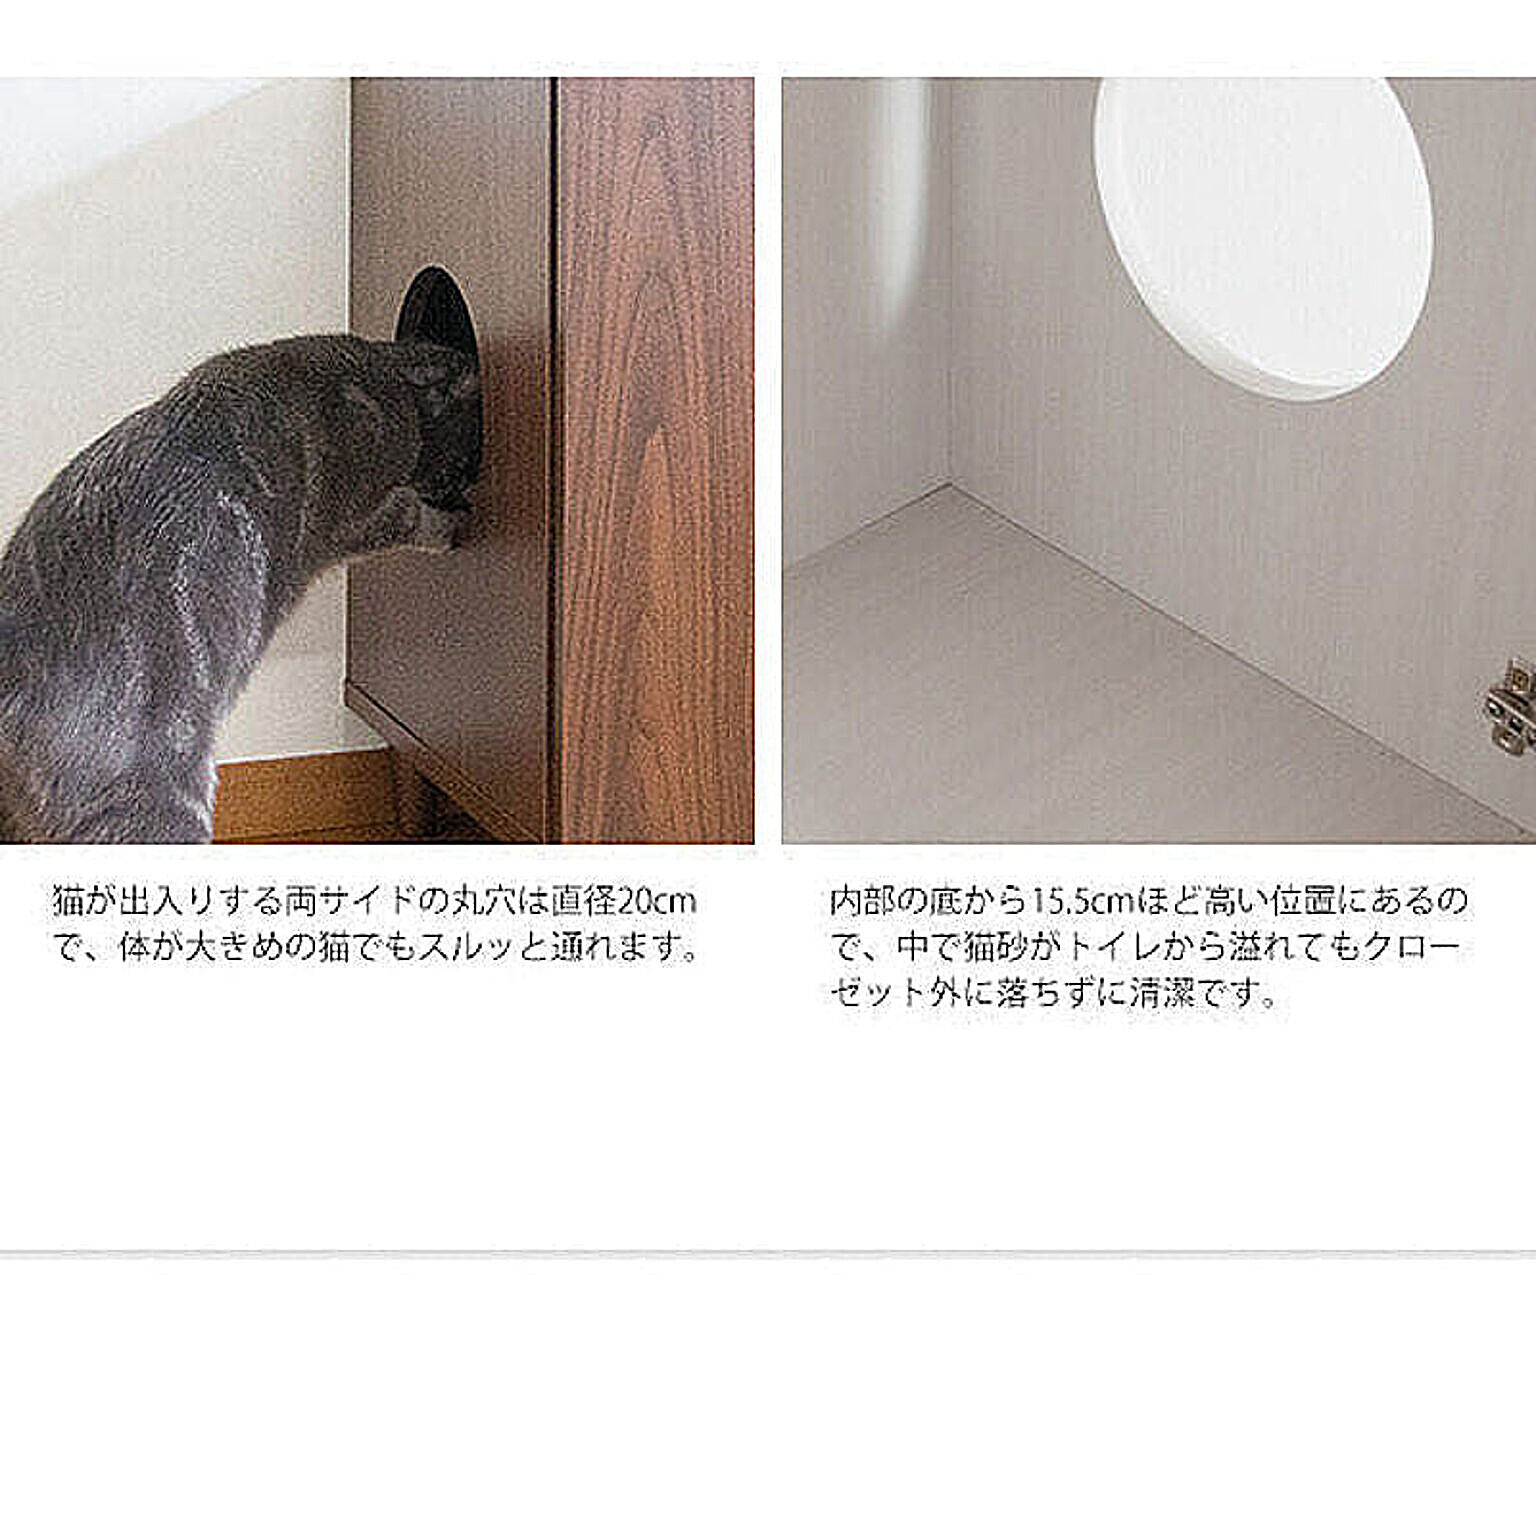 宮武製作所 キャットクローゼット Galetta 猫用トイレを隠せる CR-10